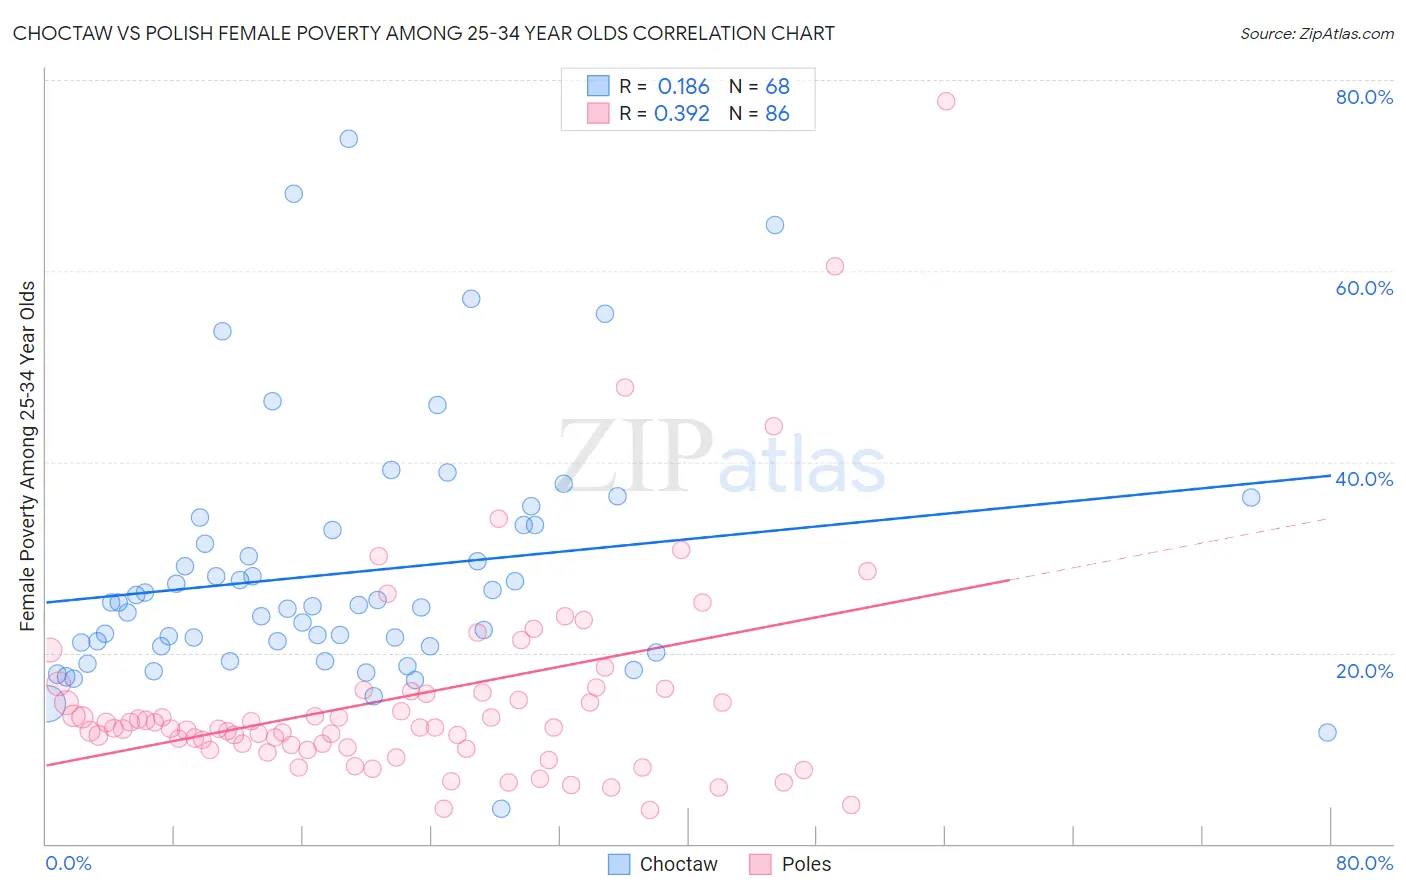 Choctaw vs Polish Female Poverty Among 25-34 Year Olds